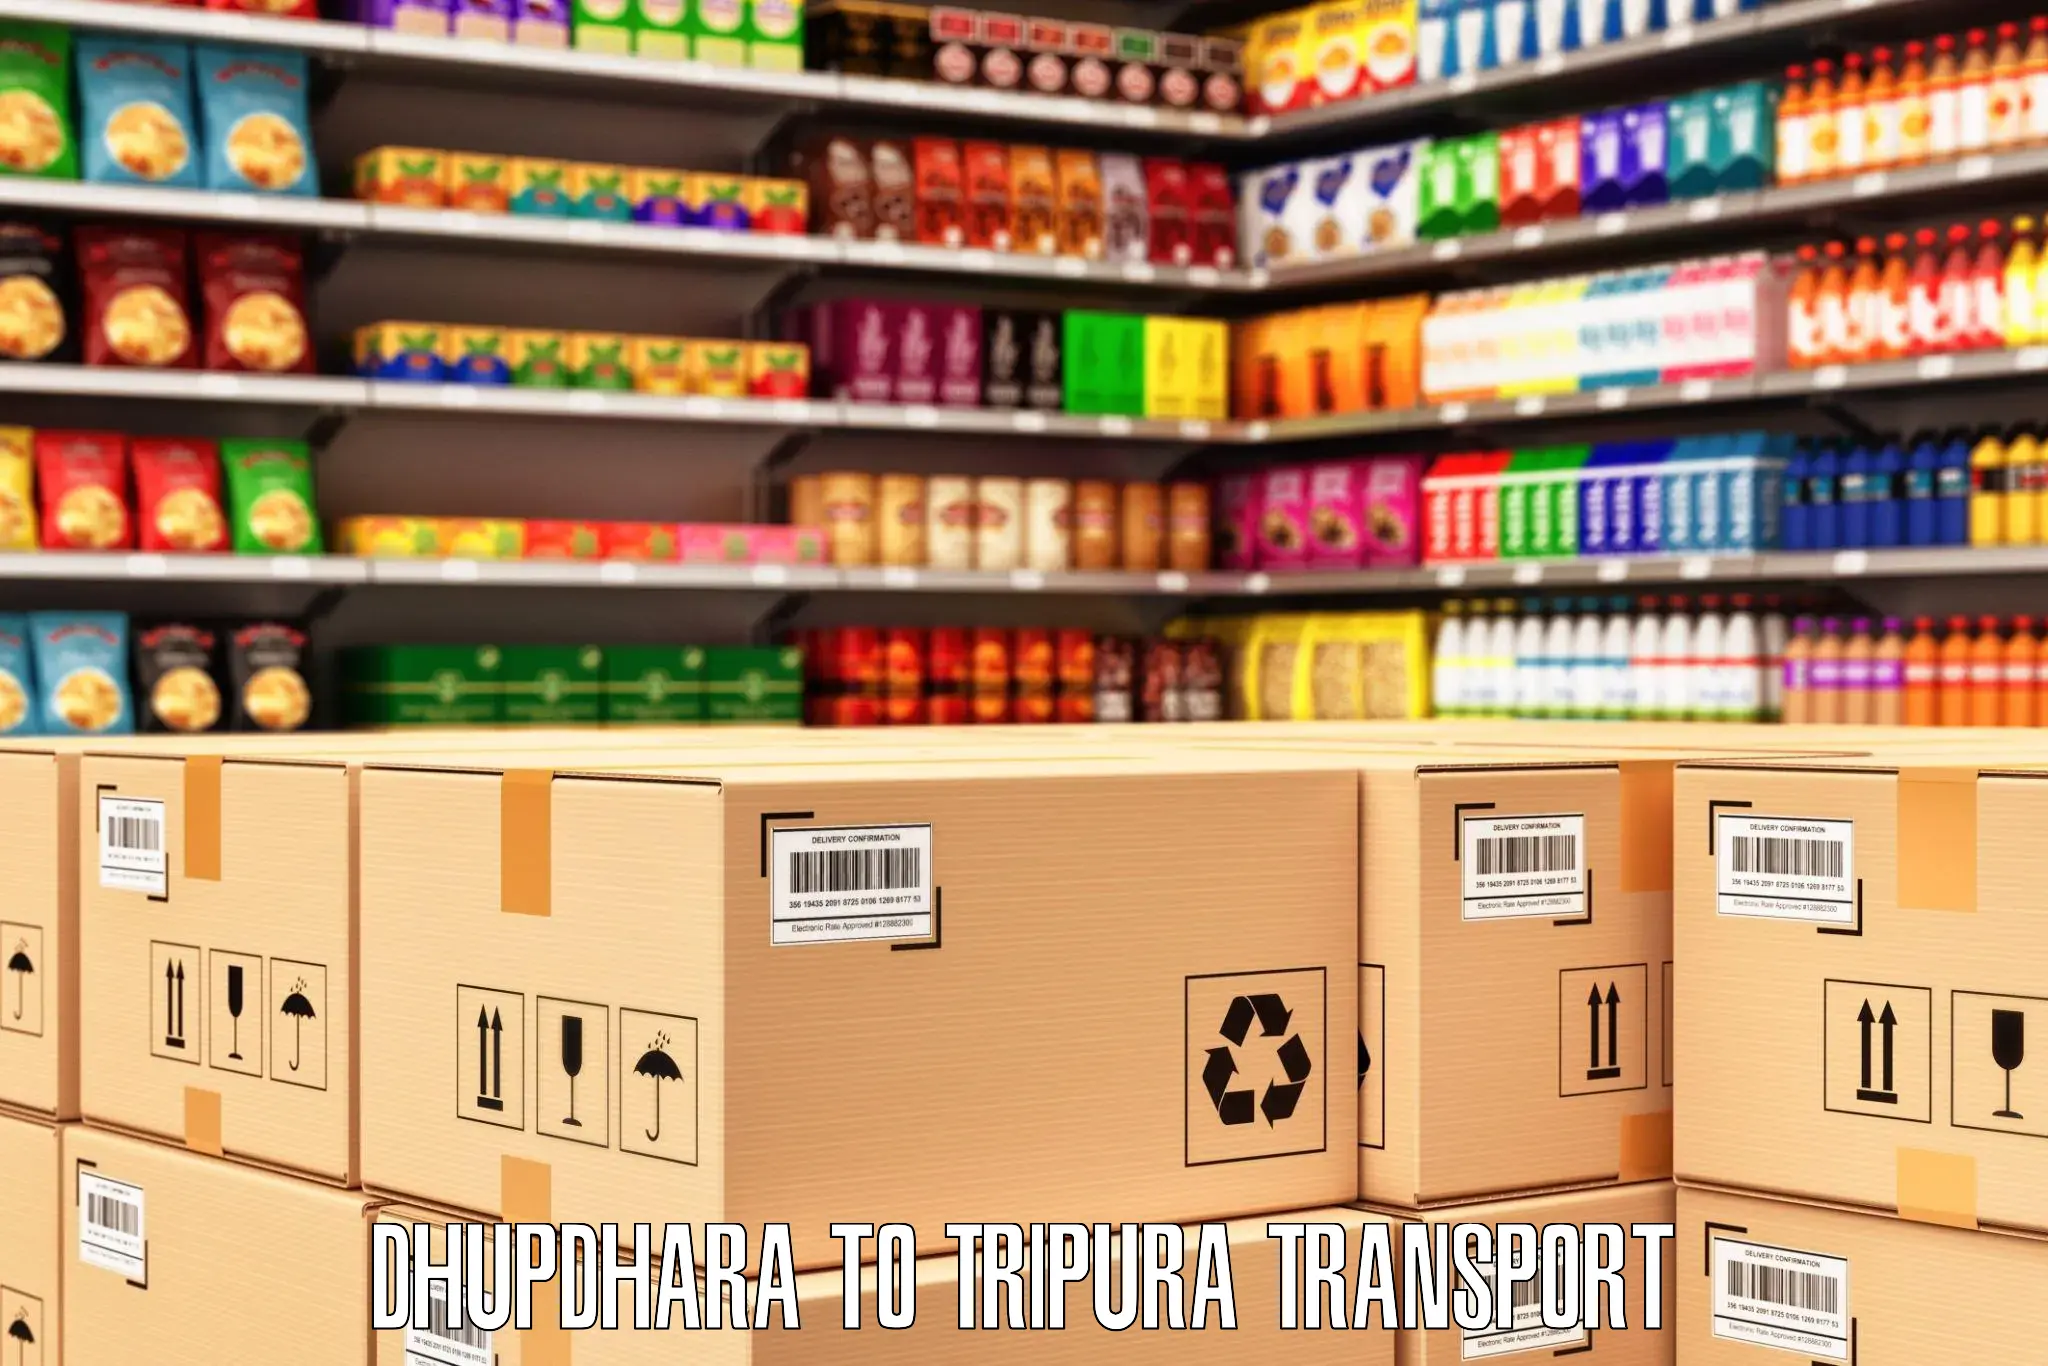 Interstate transport services Dhupdhara to Tripura